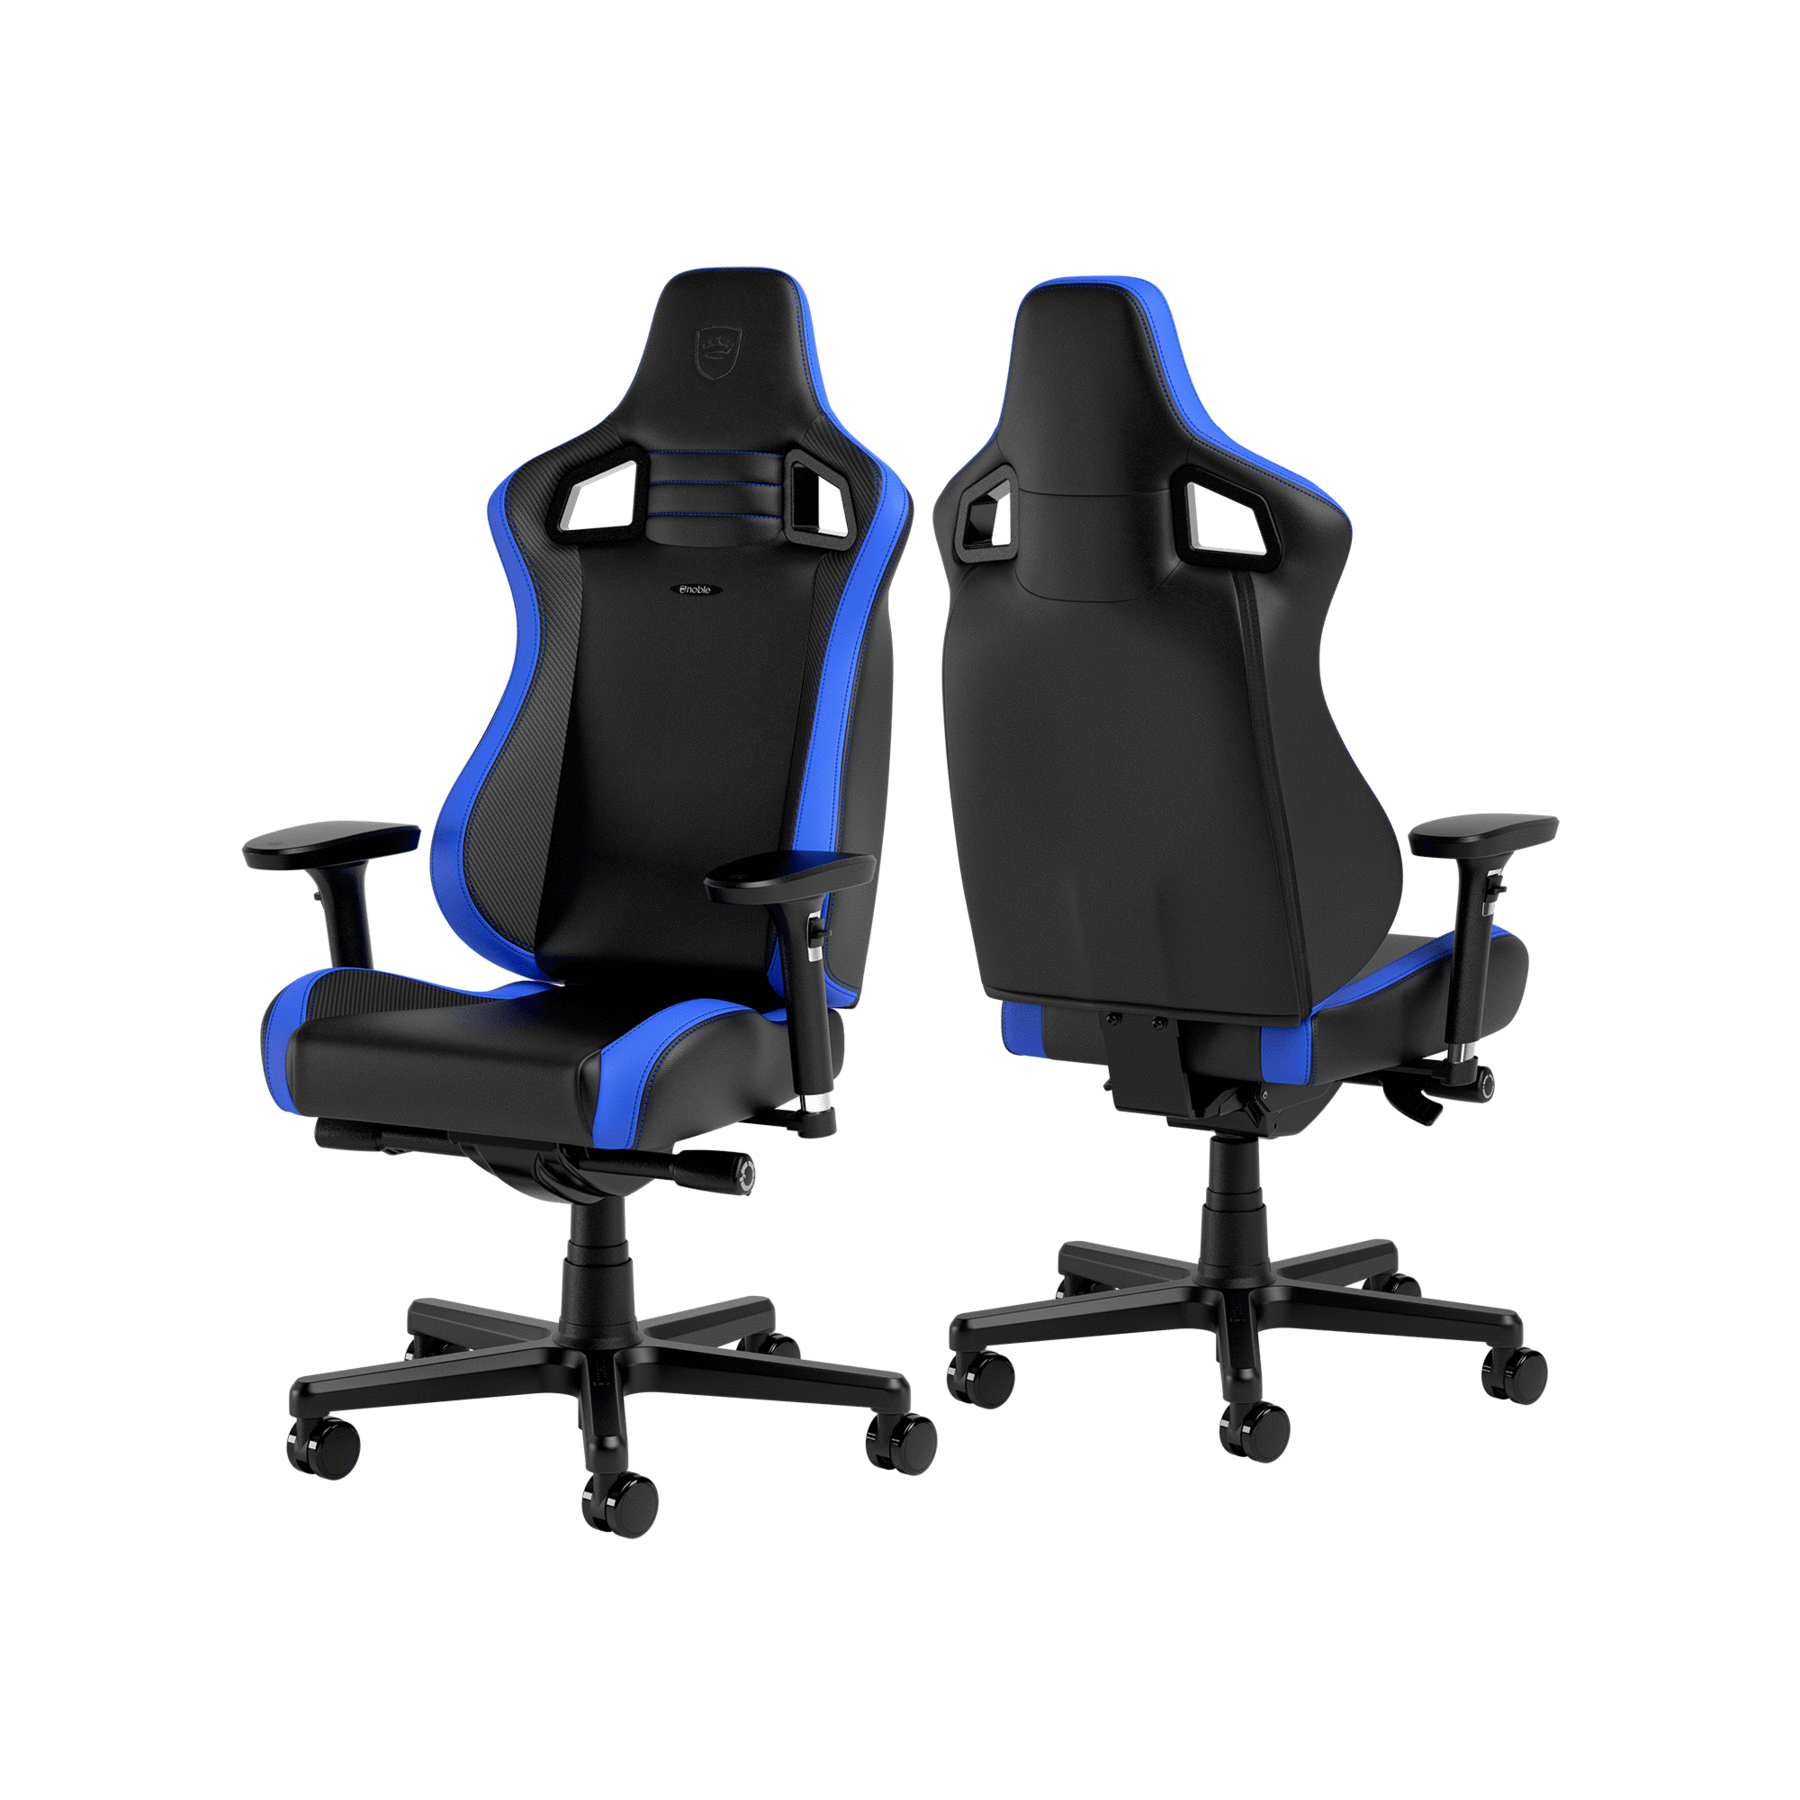 noblechairs - Cadeira noblechairs EPIC Compact - Preto /Carbono /Azul